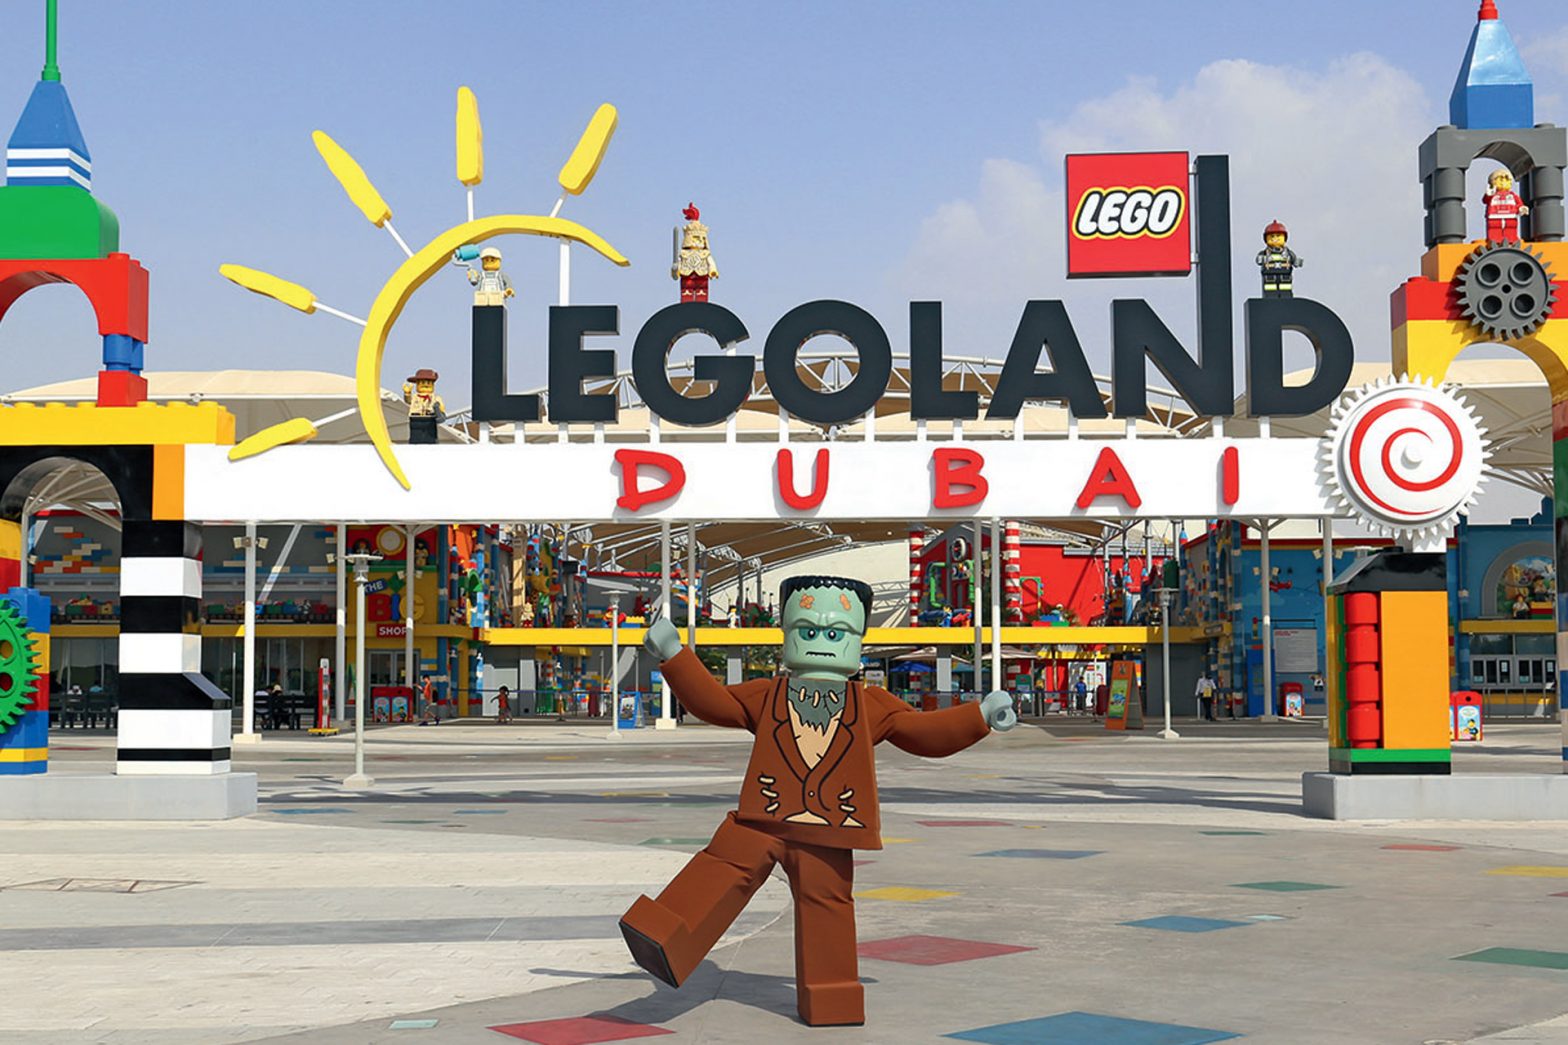 Legoland Dubai rides 